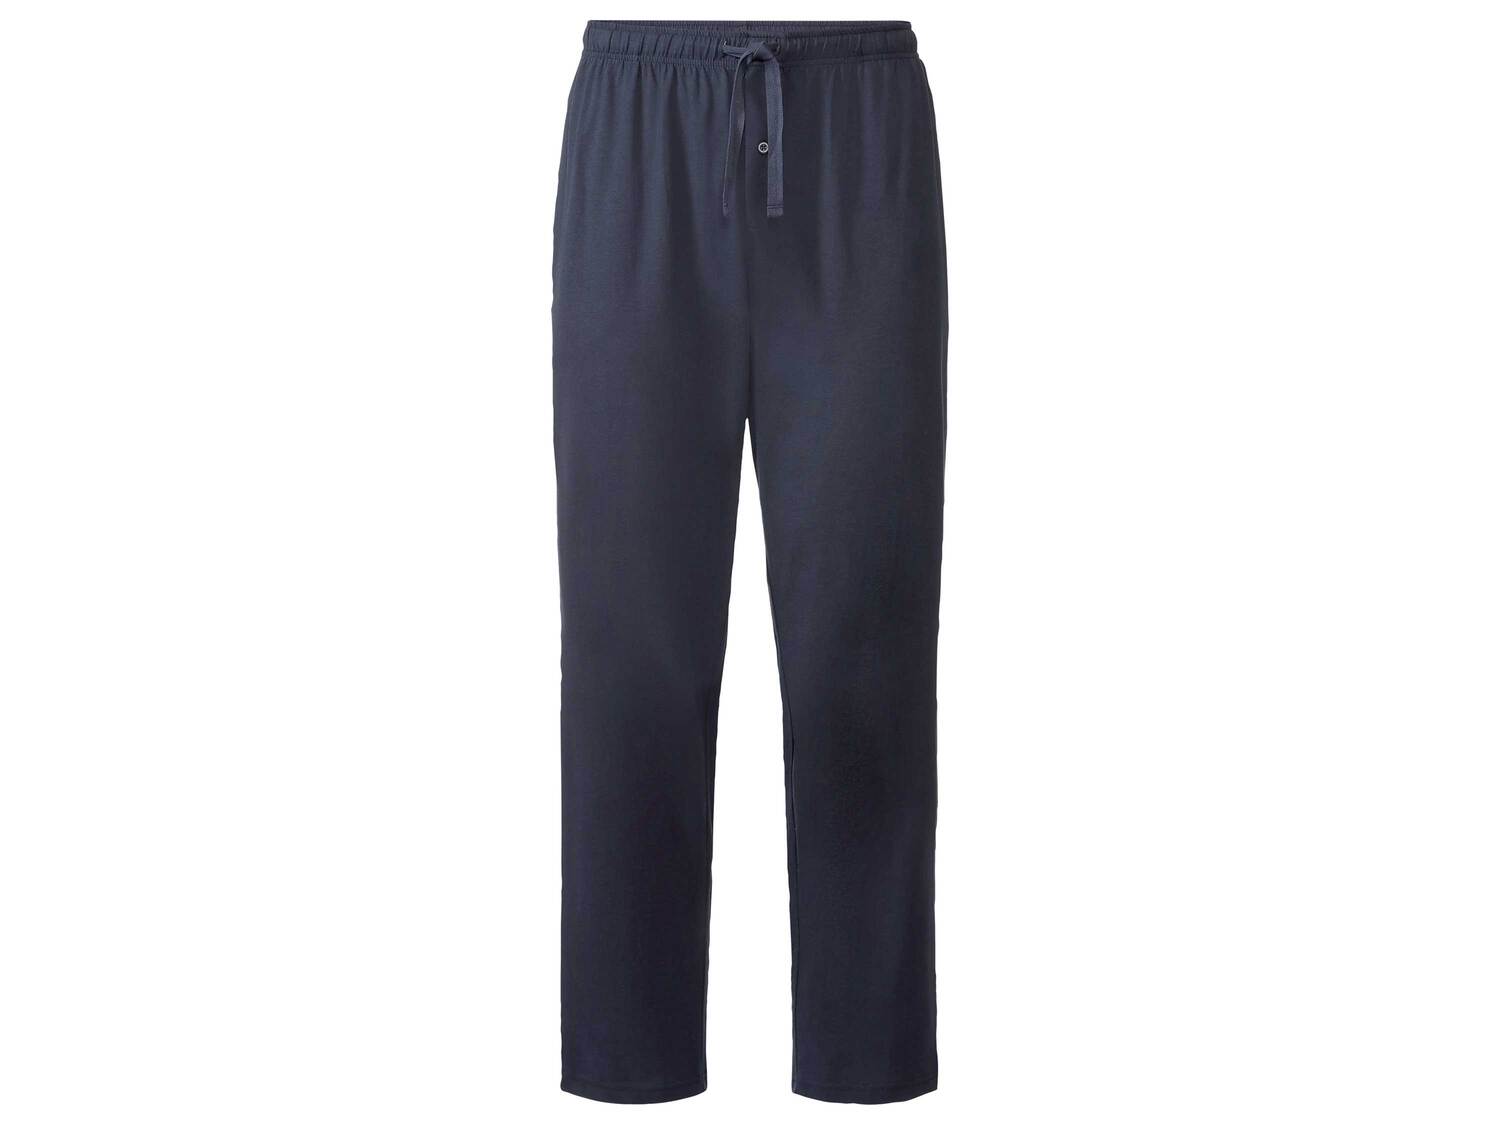 Pyjama , le prix 12.99 € 
- Du S au L selon modèle
- Ex. haut 80 % coton et ...